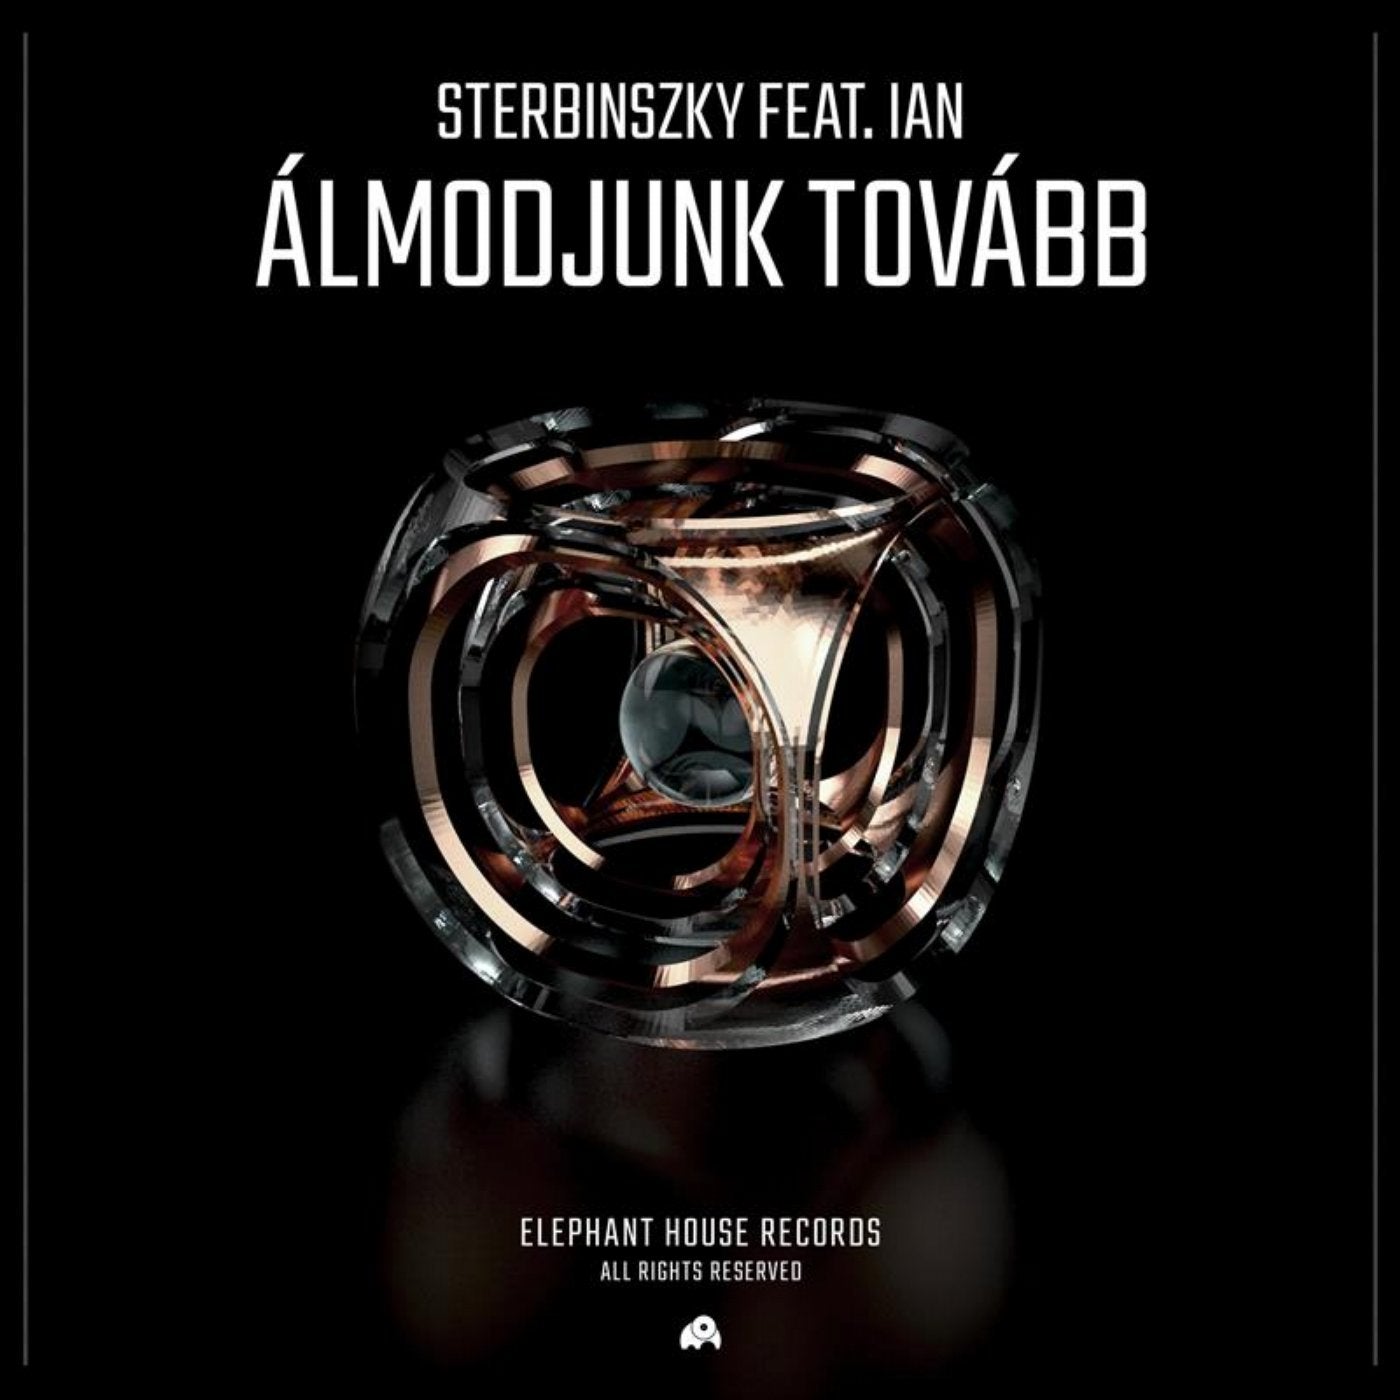 Almodjunk tovabb (feat. Ian)